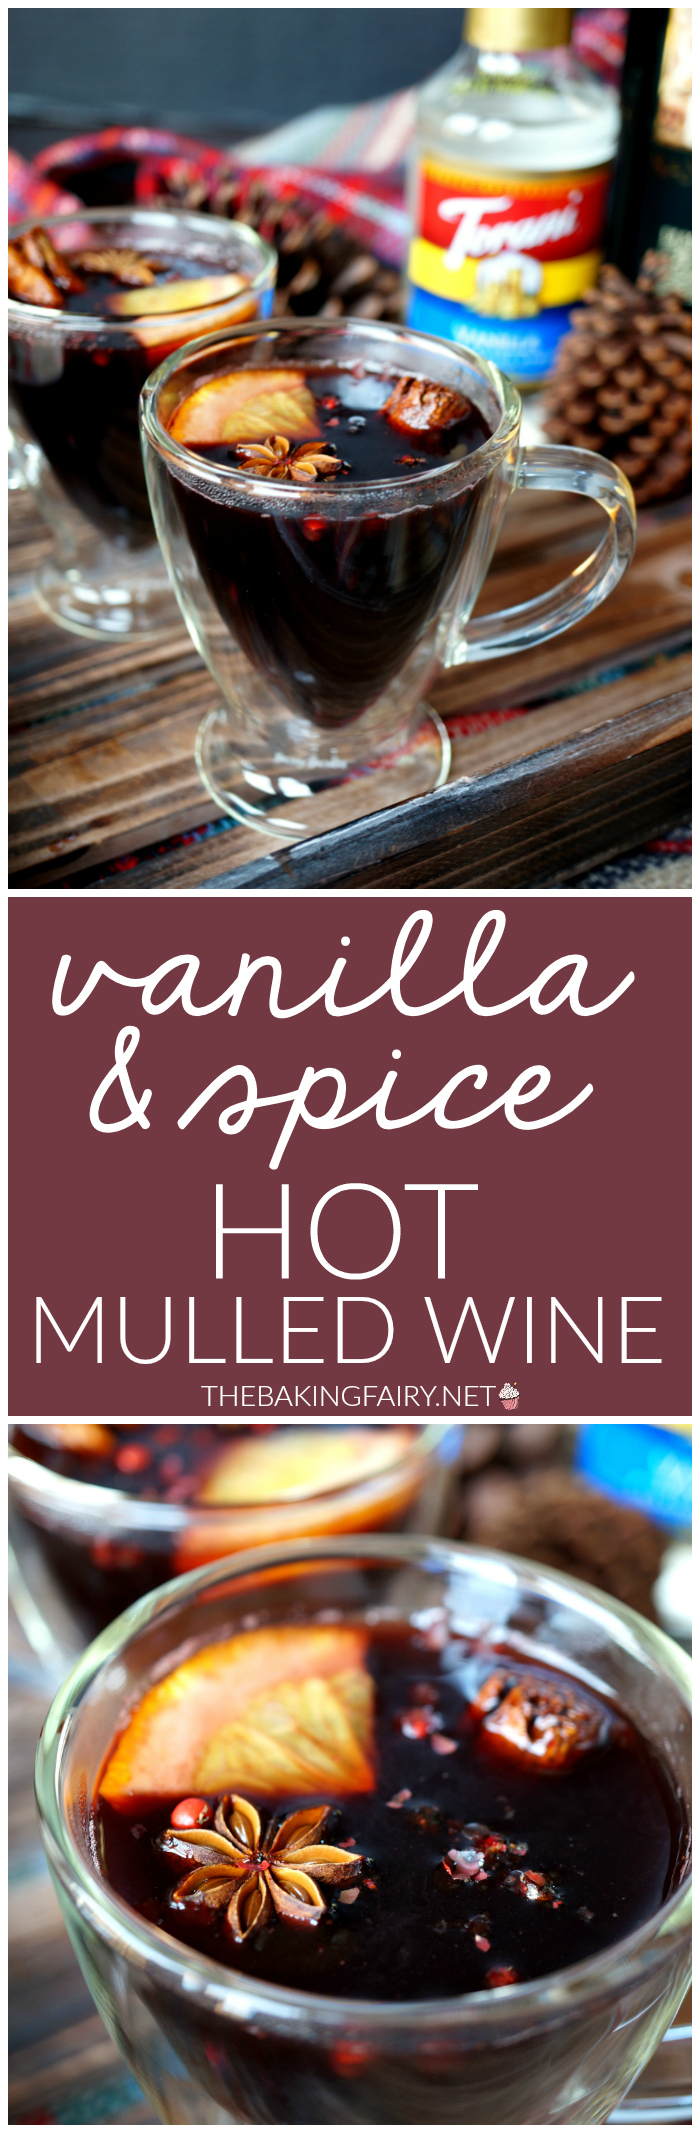 vanilla & spice hot mulled wine | The Baking Fairy #ChristmasSweetsWeek #JoyJolt #DrinkForJoy #ad